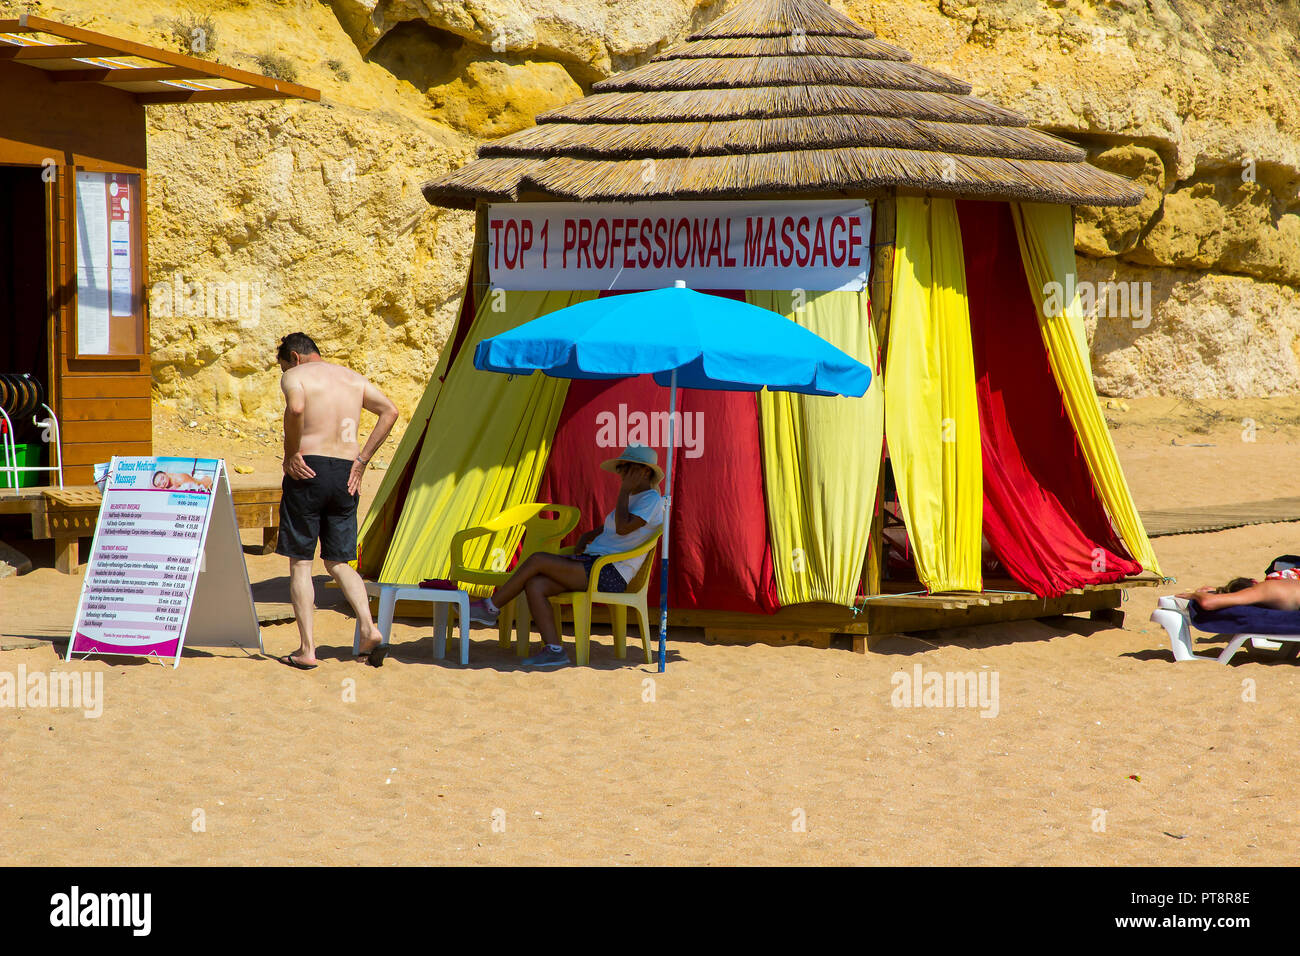 28 septembre 2018 un professionnel de massage tente sur la plage Praia Do Inatel plage près de la vieille ville Albuferia Portugal un jour ensoleillé chaud Banque D'Images